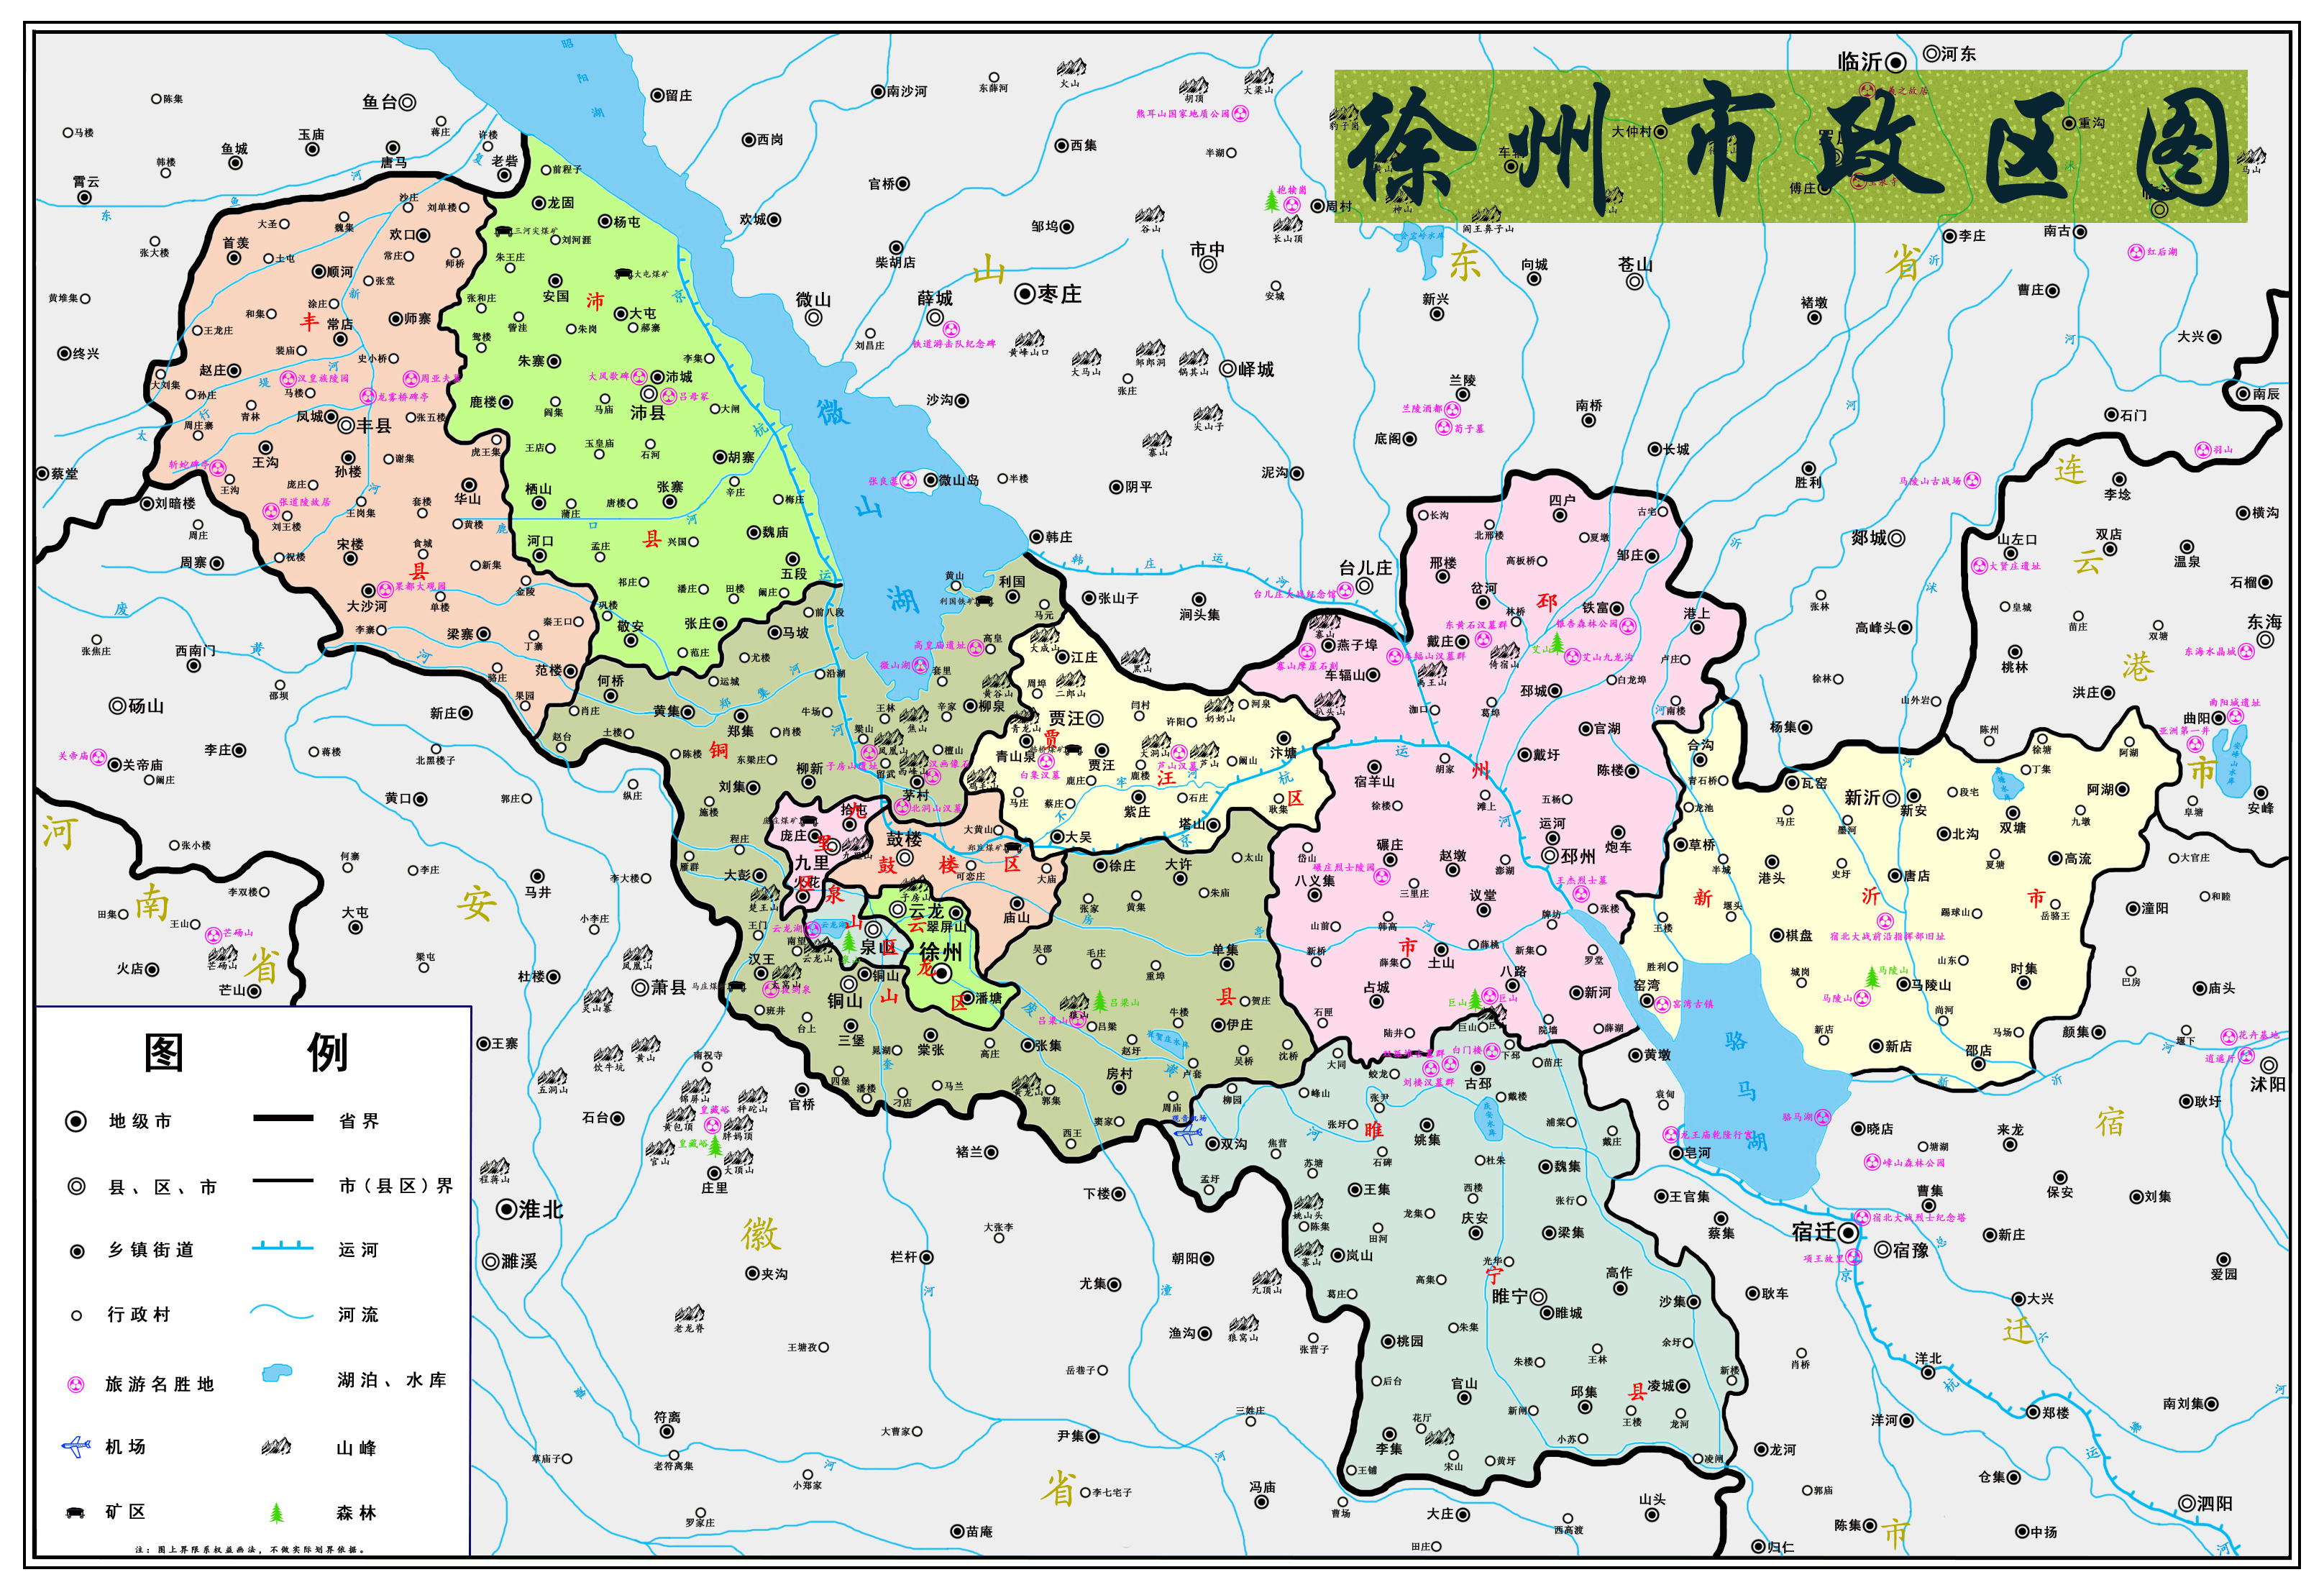  这是孔明制作的简易徐州地图,为方便大家使用,就不标注版权啦.图片